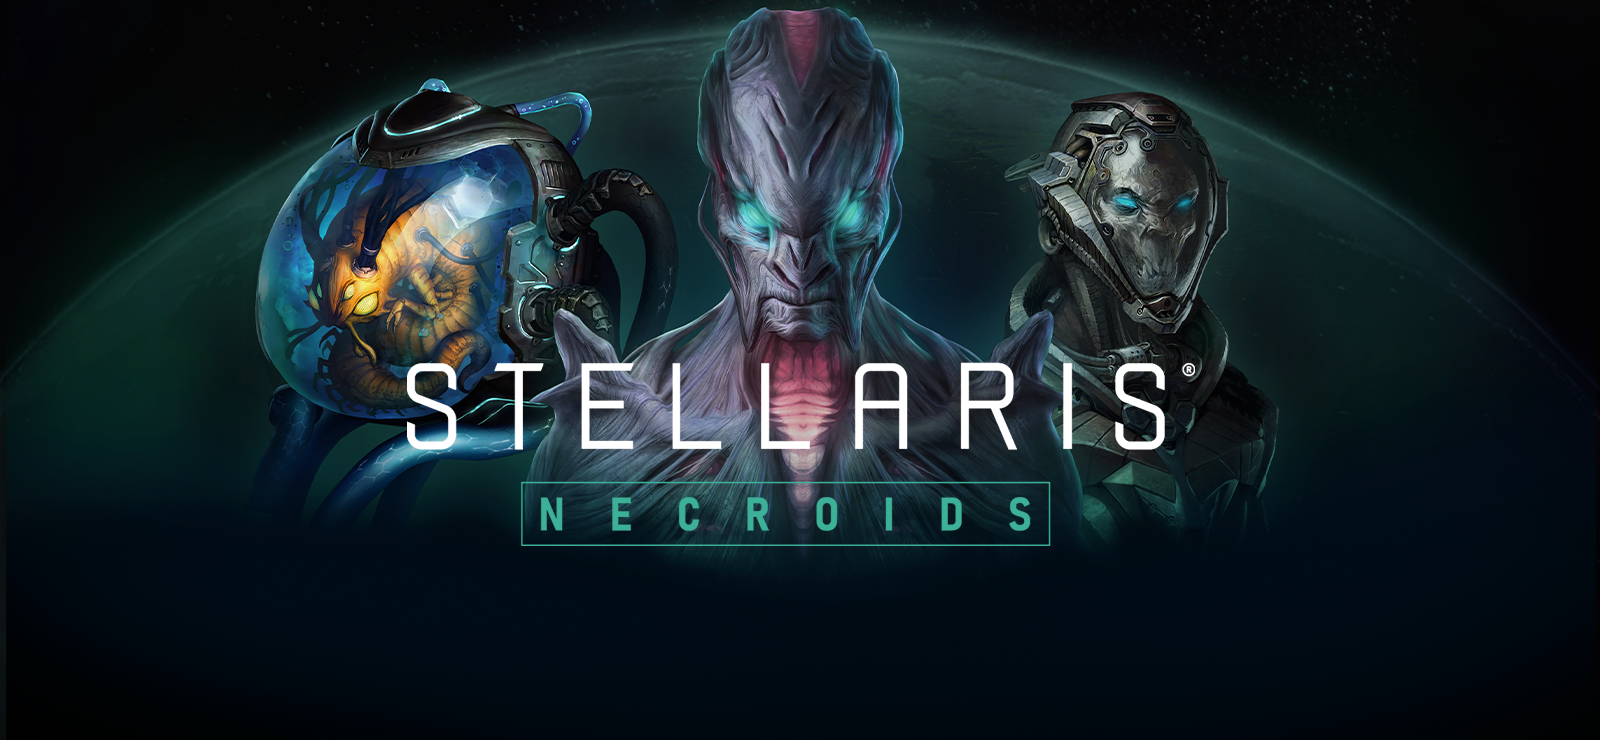 Stellaris: Necroids Species Pack